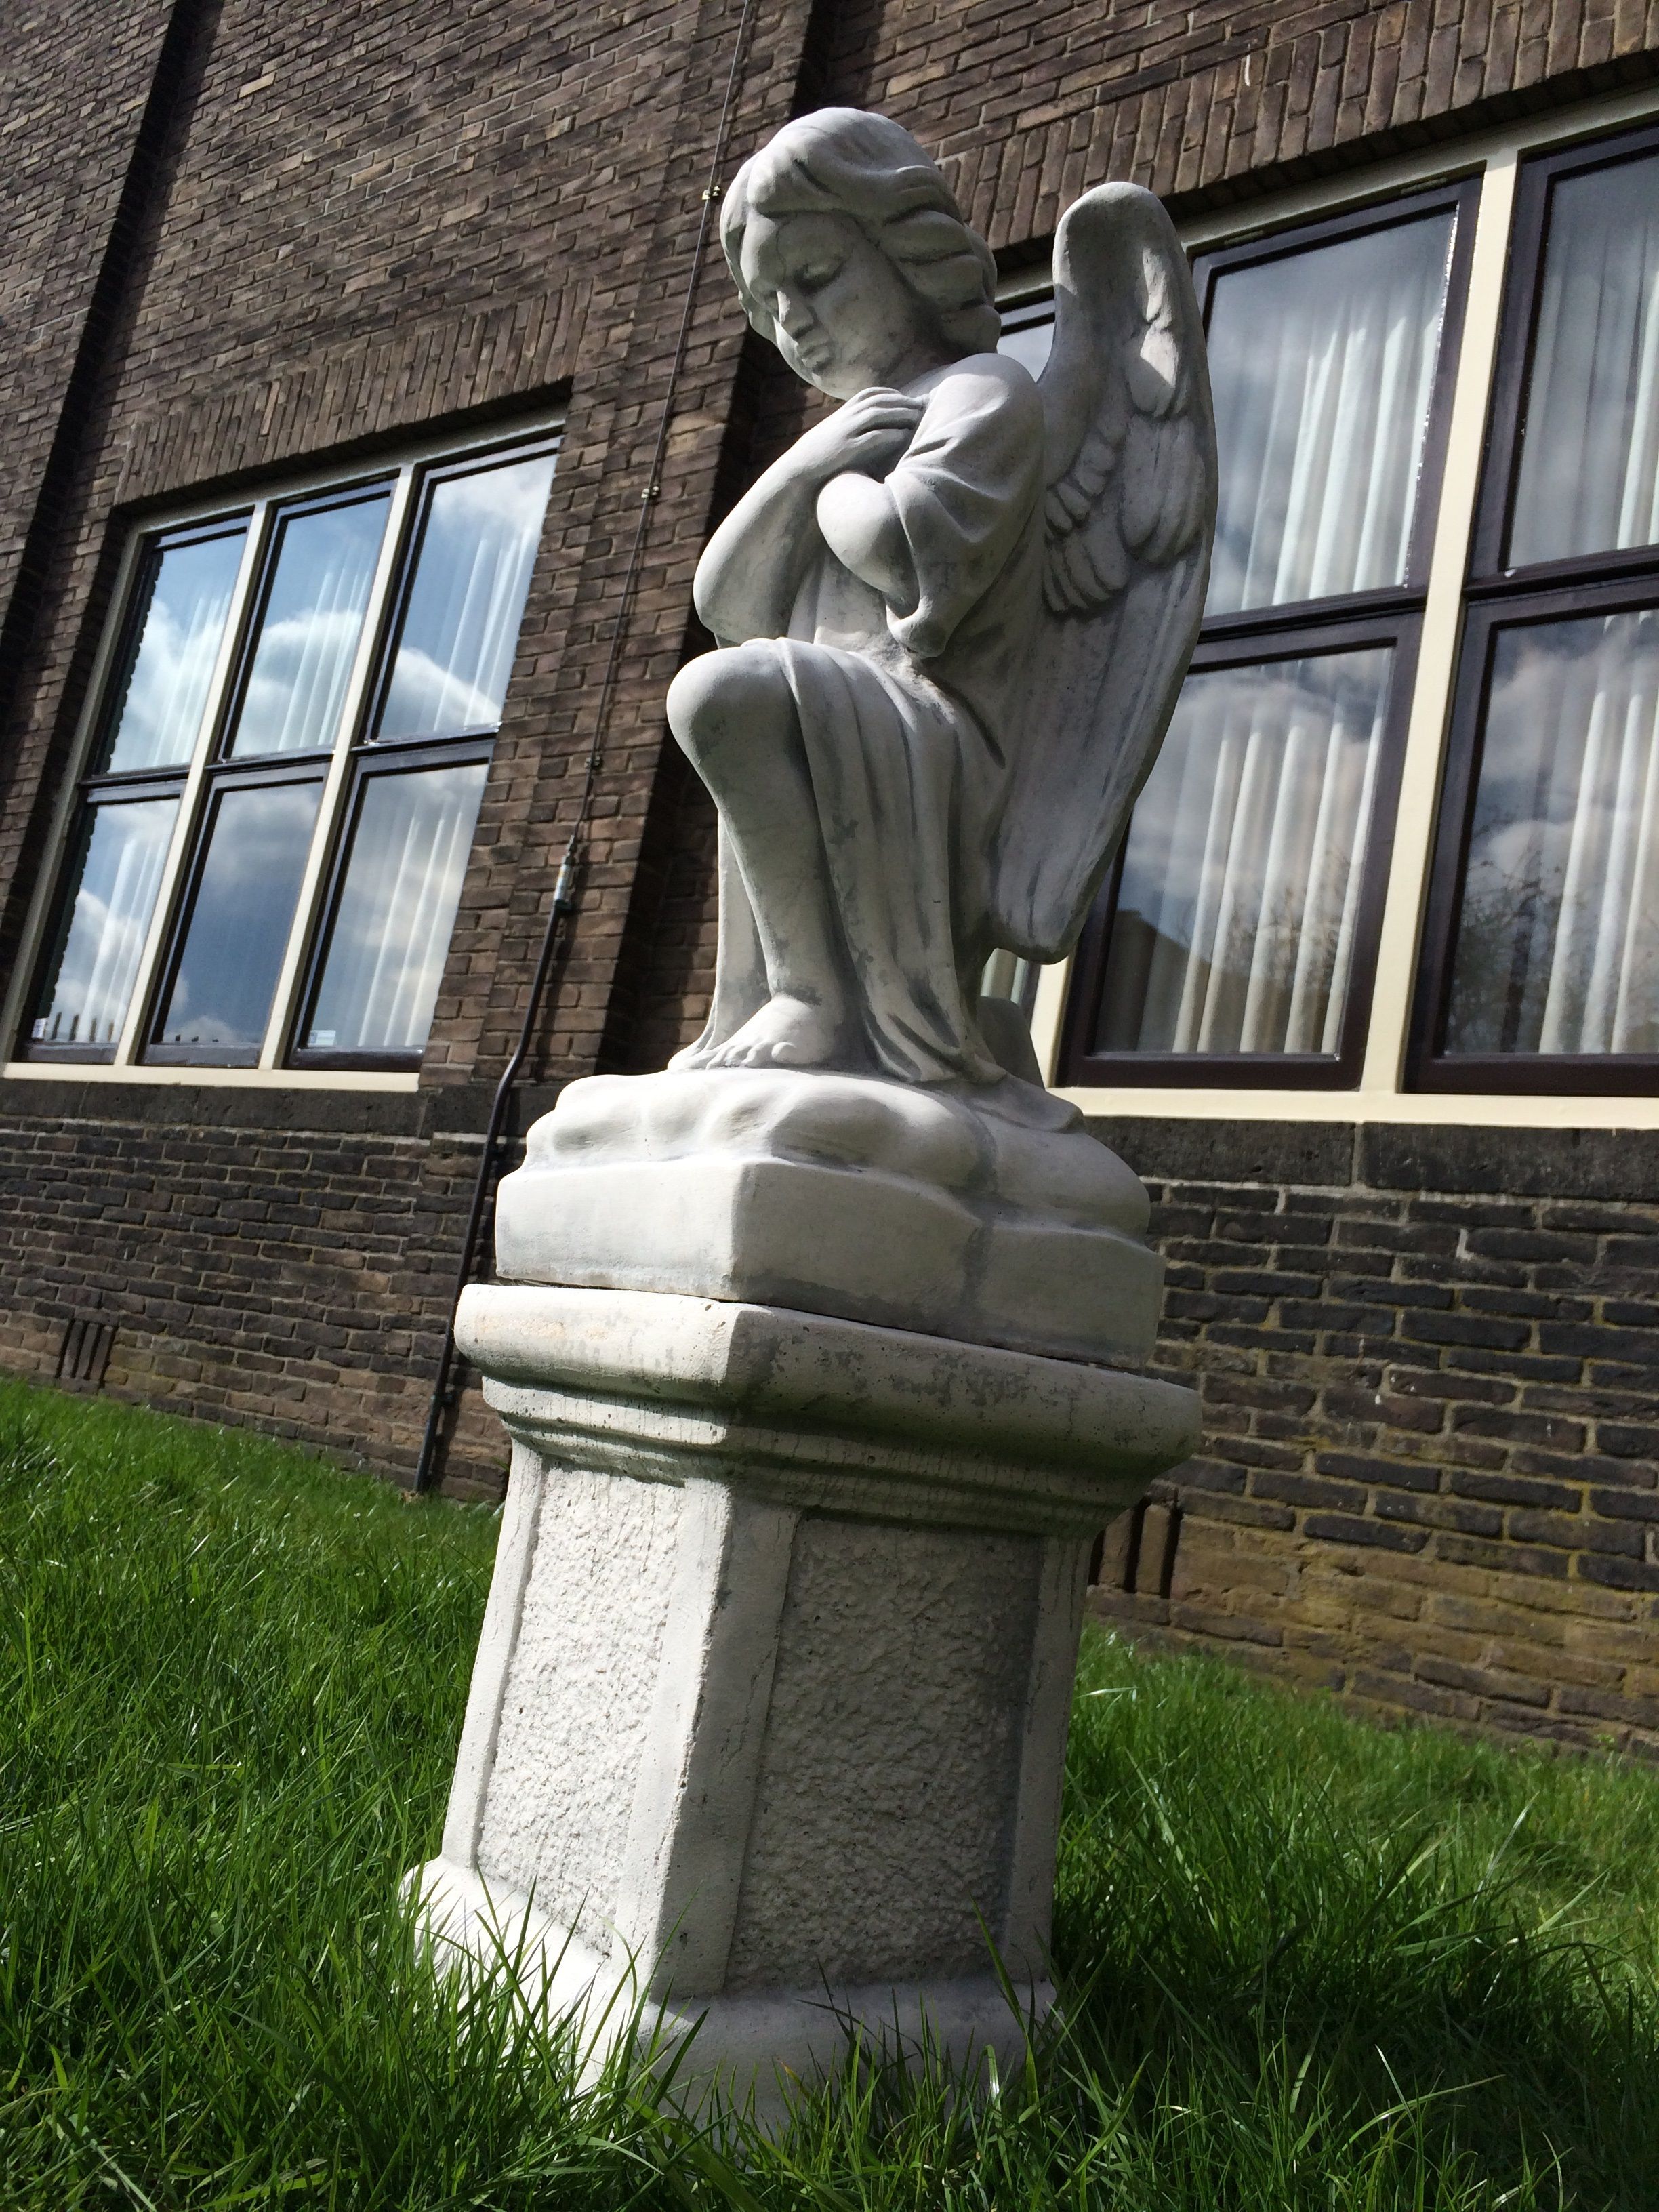 Engel kniend auf Sockel, voll massivem Steinguss Skulptur, schön gestaltet!